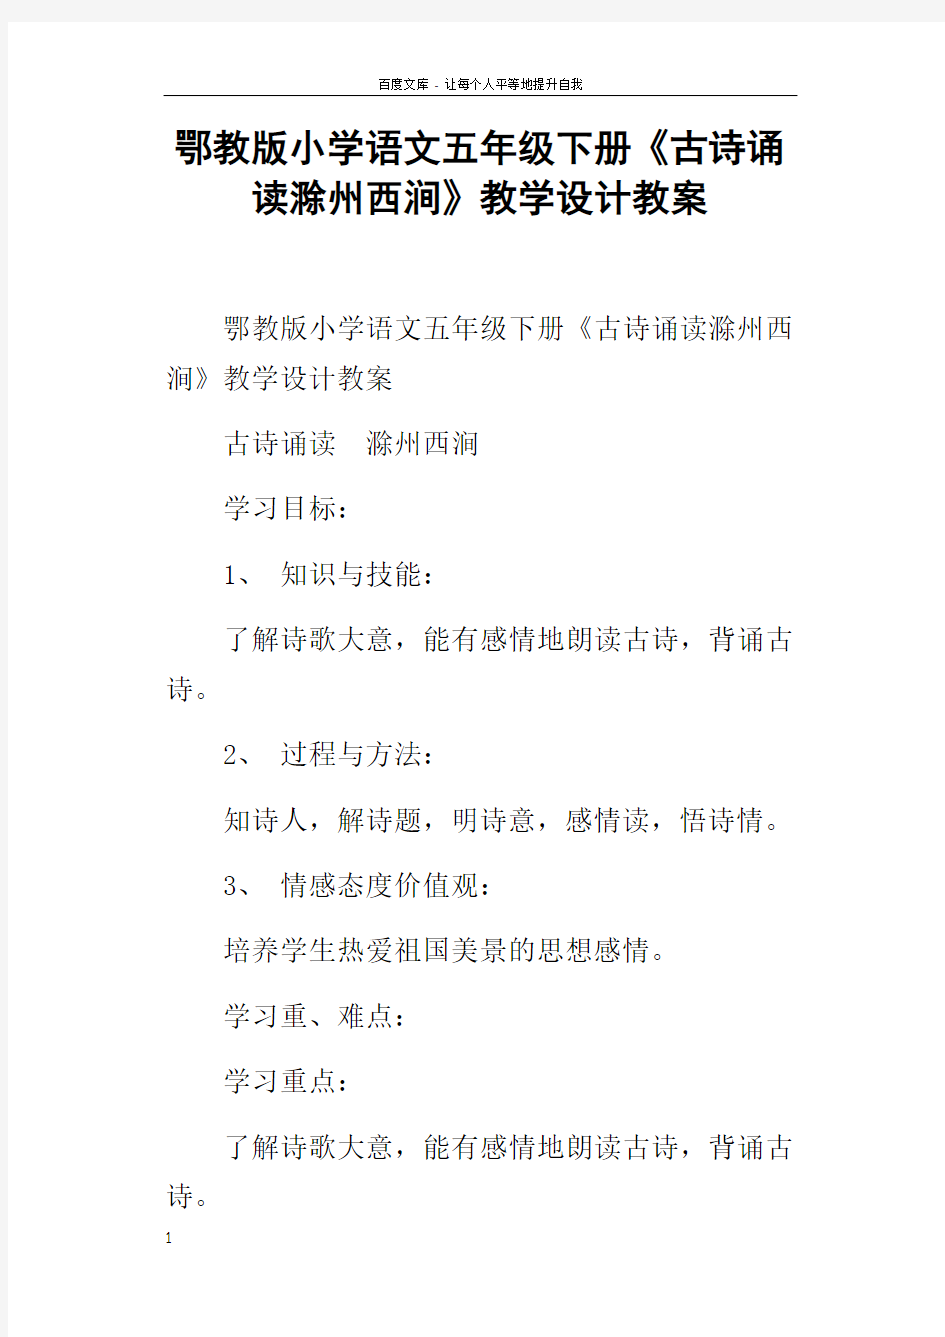 鄂教版小学语文五年级下册古诗诵读滁州西涧教学设计教案